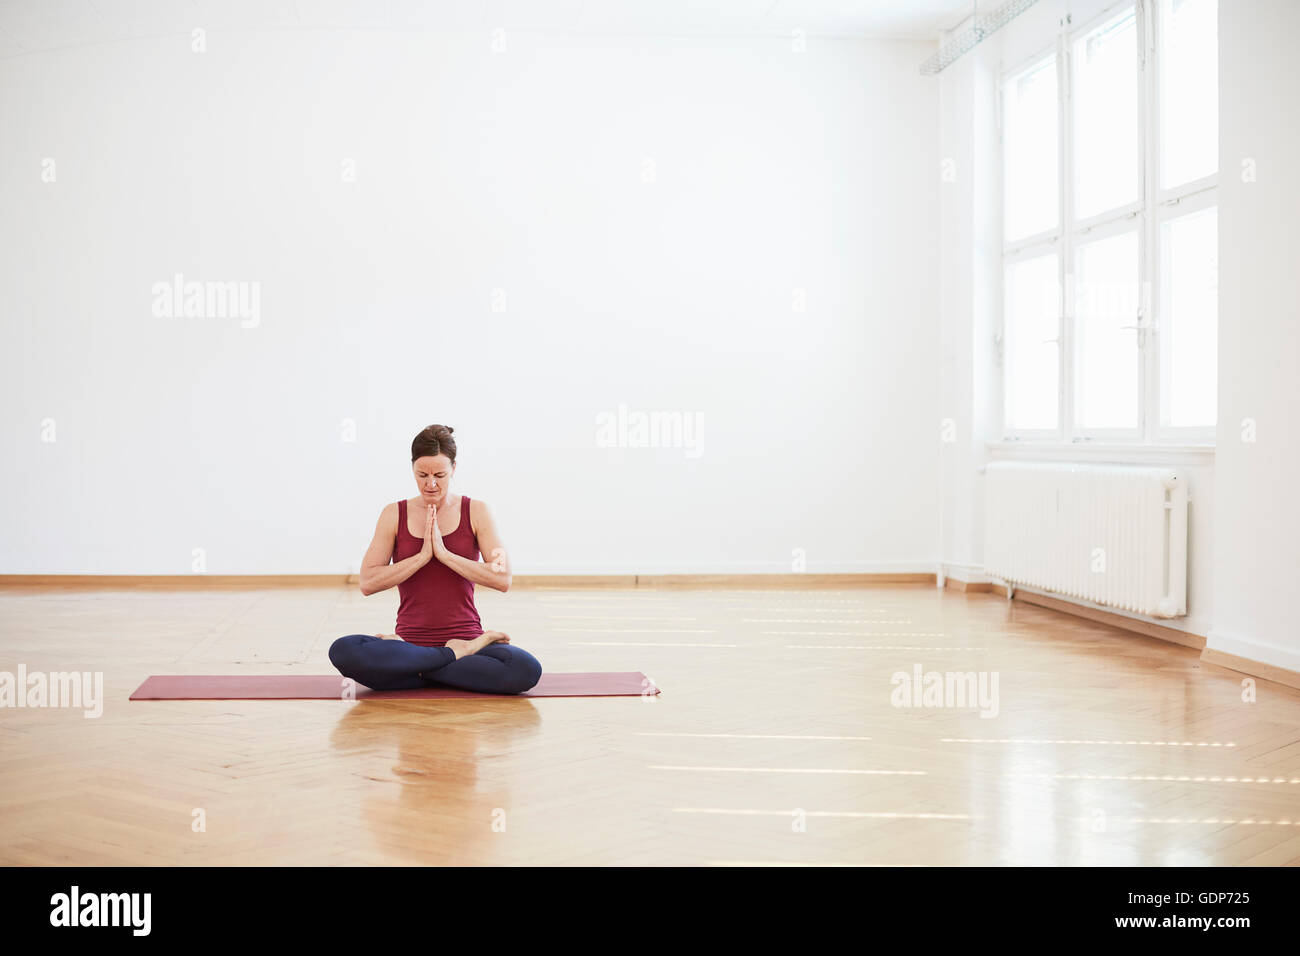 Mujer en el estudio de ejercicio sentado piernas cruzadas, las manos juntas meditando Foto de stock